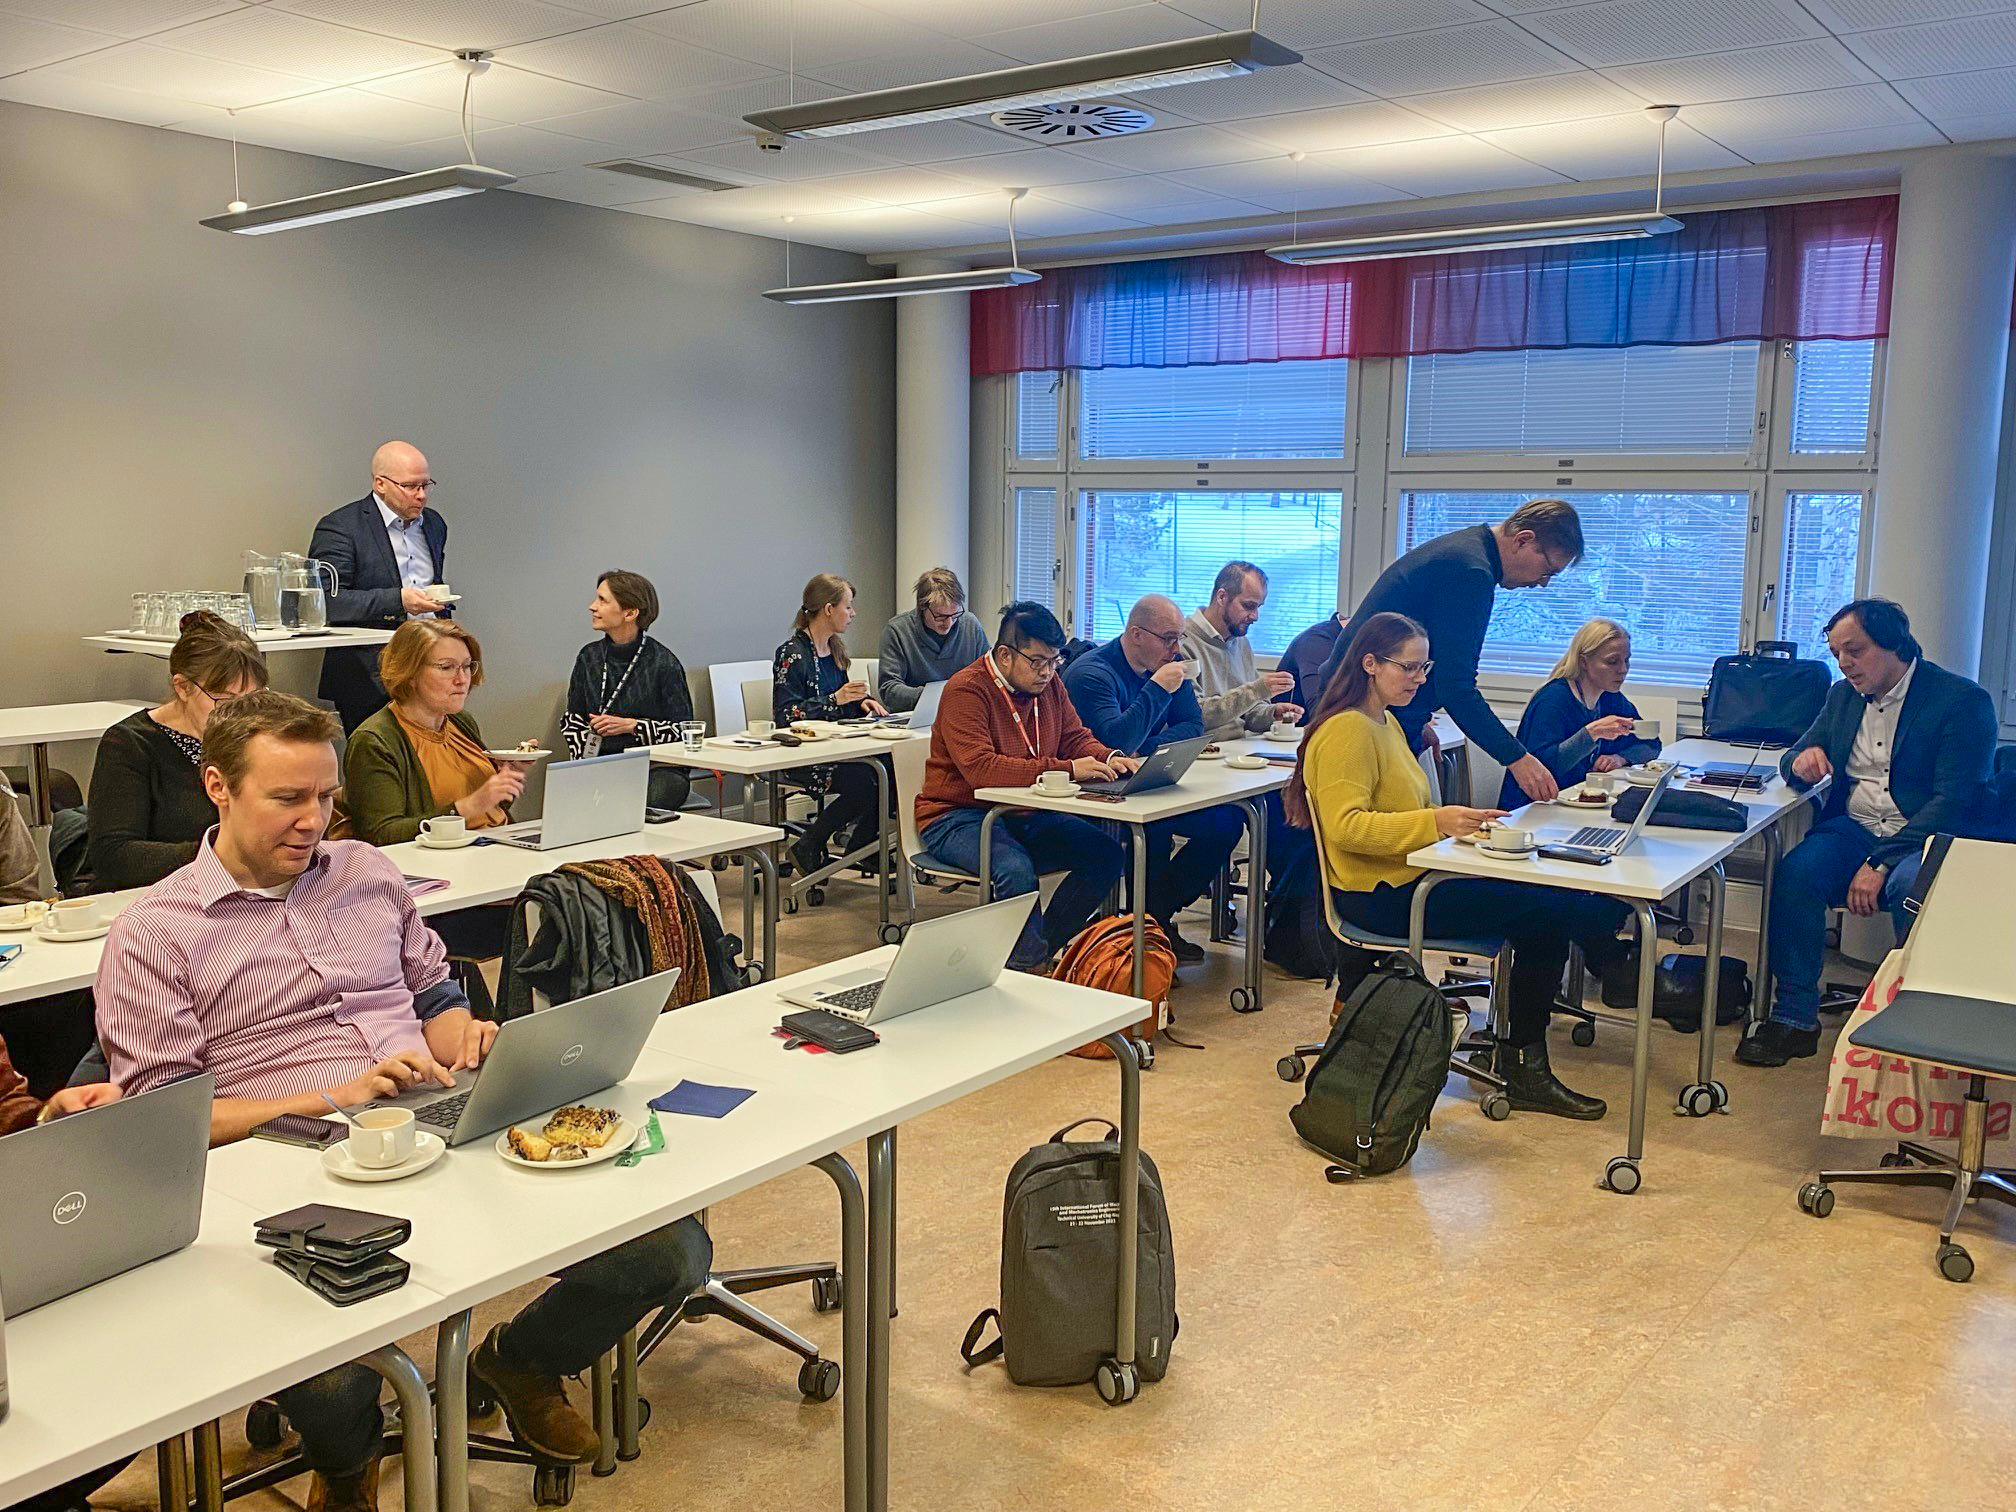 Keski-Suomen vetyverkoston jäseniä tammikuun tapaamisessa. Ihmiset istuvat Jyväskylän ammattikorkeakoulun luokkahuoneessa pöytien takana, läppärit edessään.